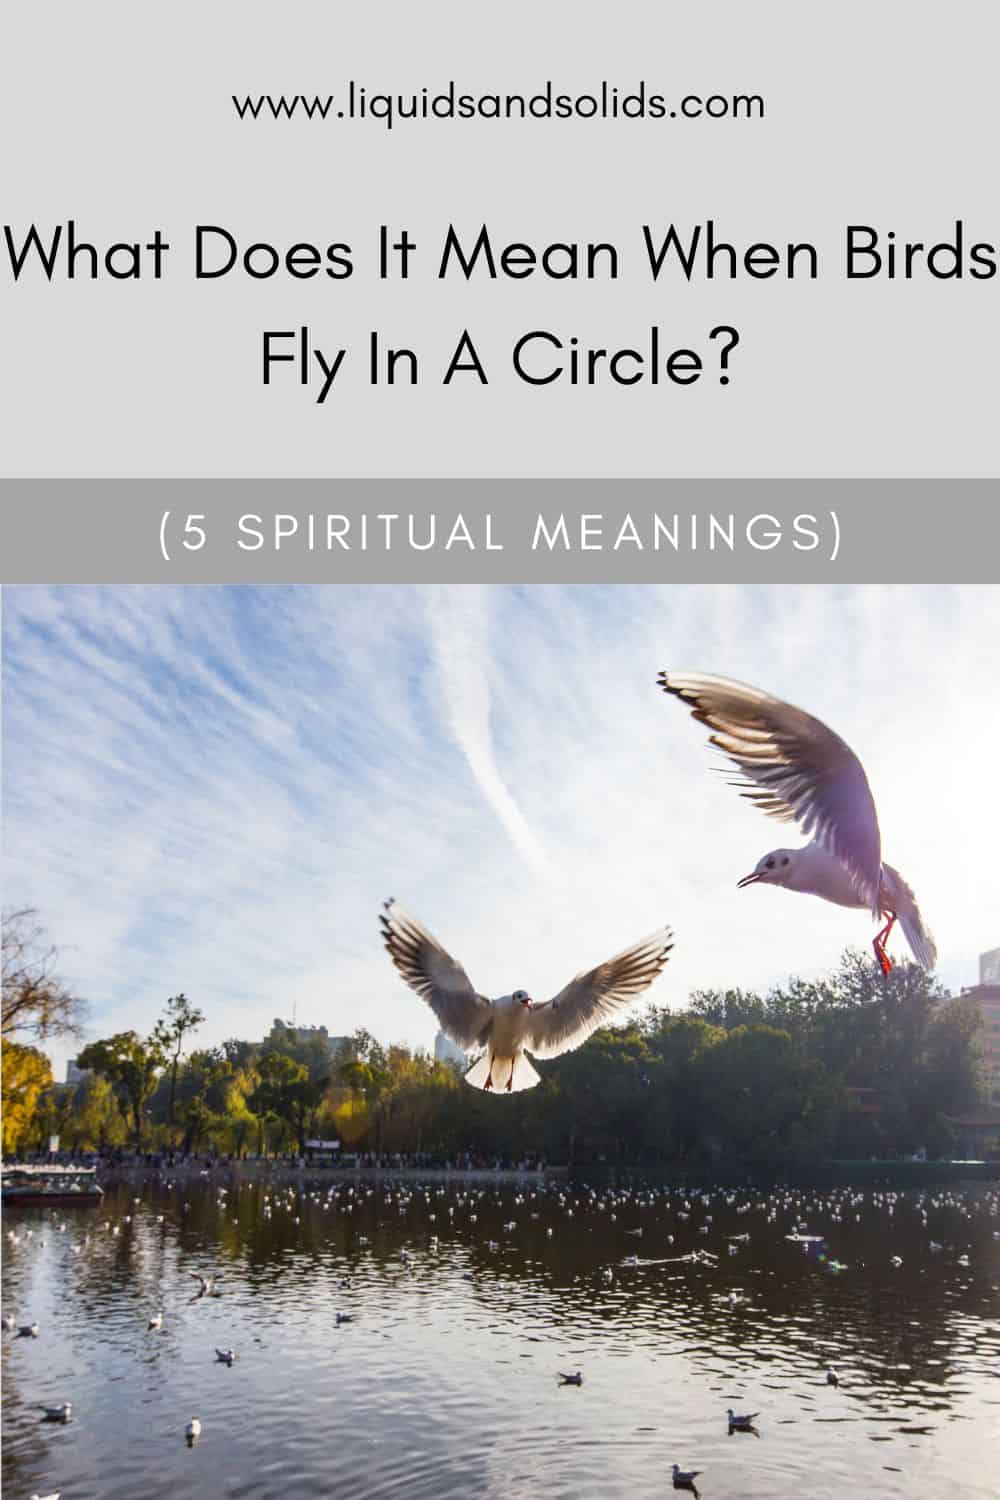  რას ნიშნავს, როდესაც ჩიტები დაფრინავენ წრეში? (5 სულიერი მნიშვნელობა)